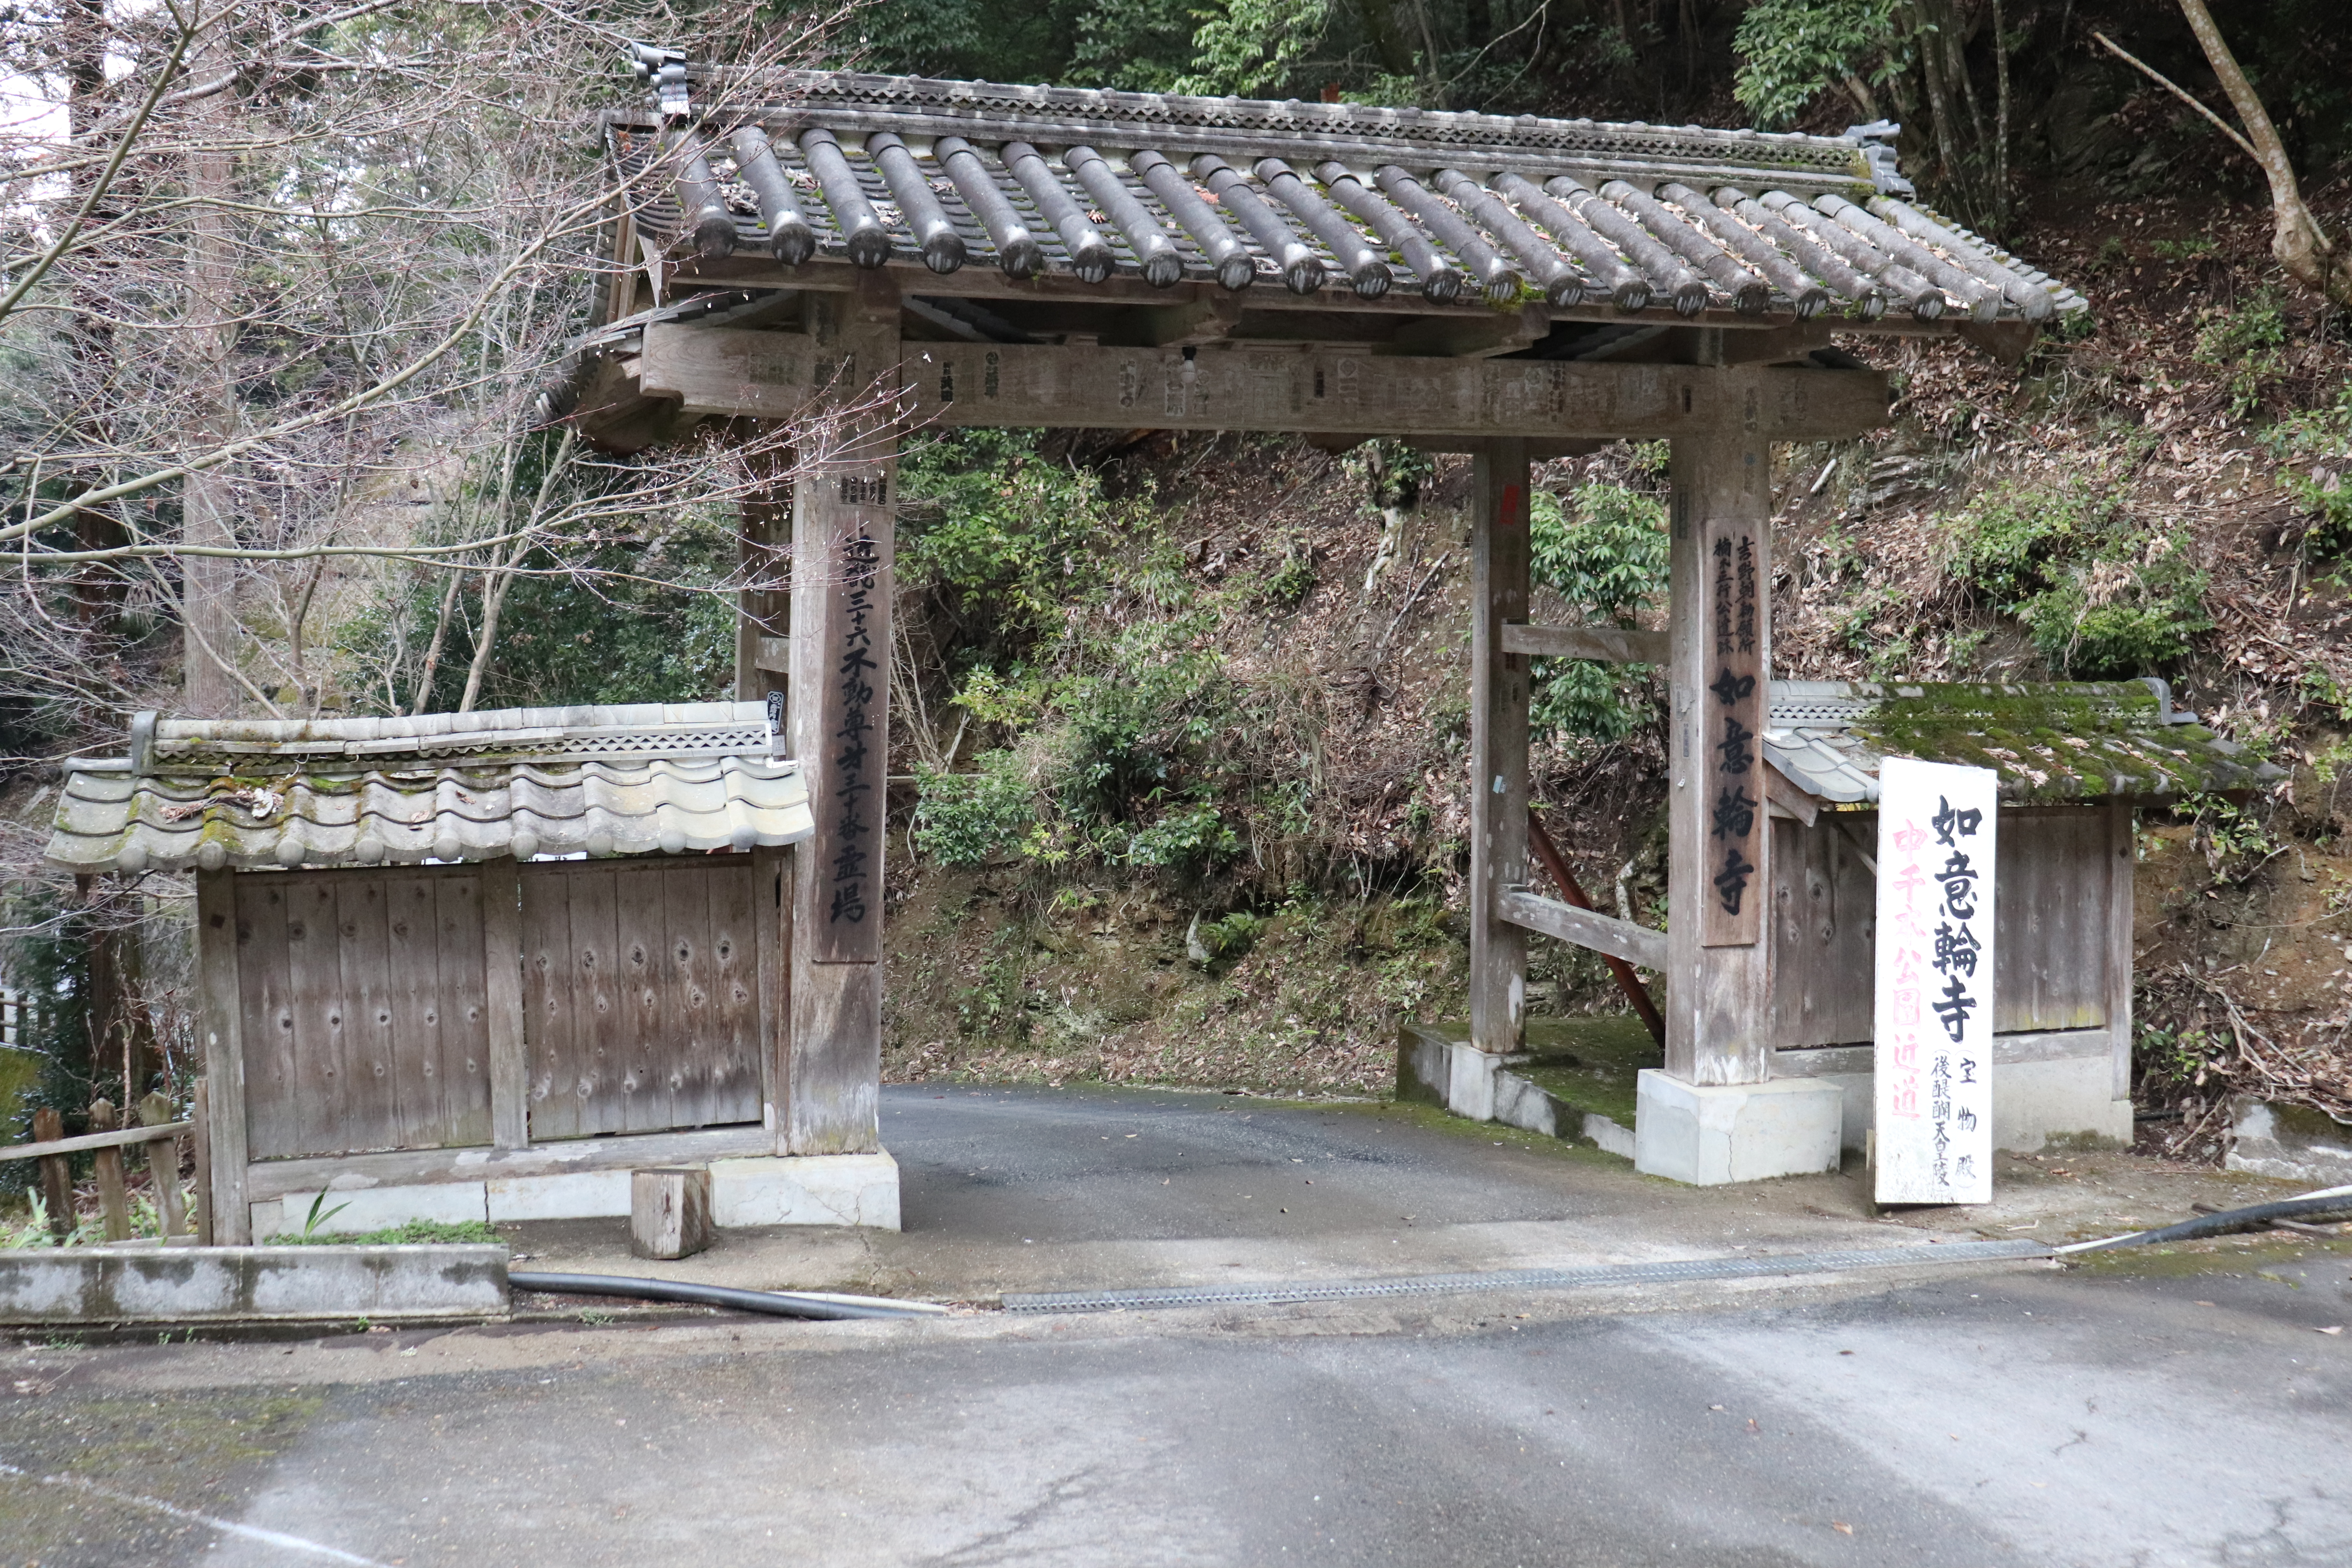 Entrance of Nyoririn-ji temple in Yoshino Japan